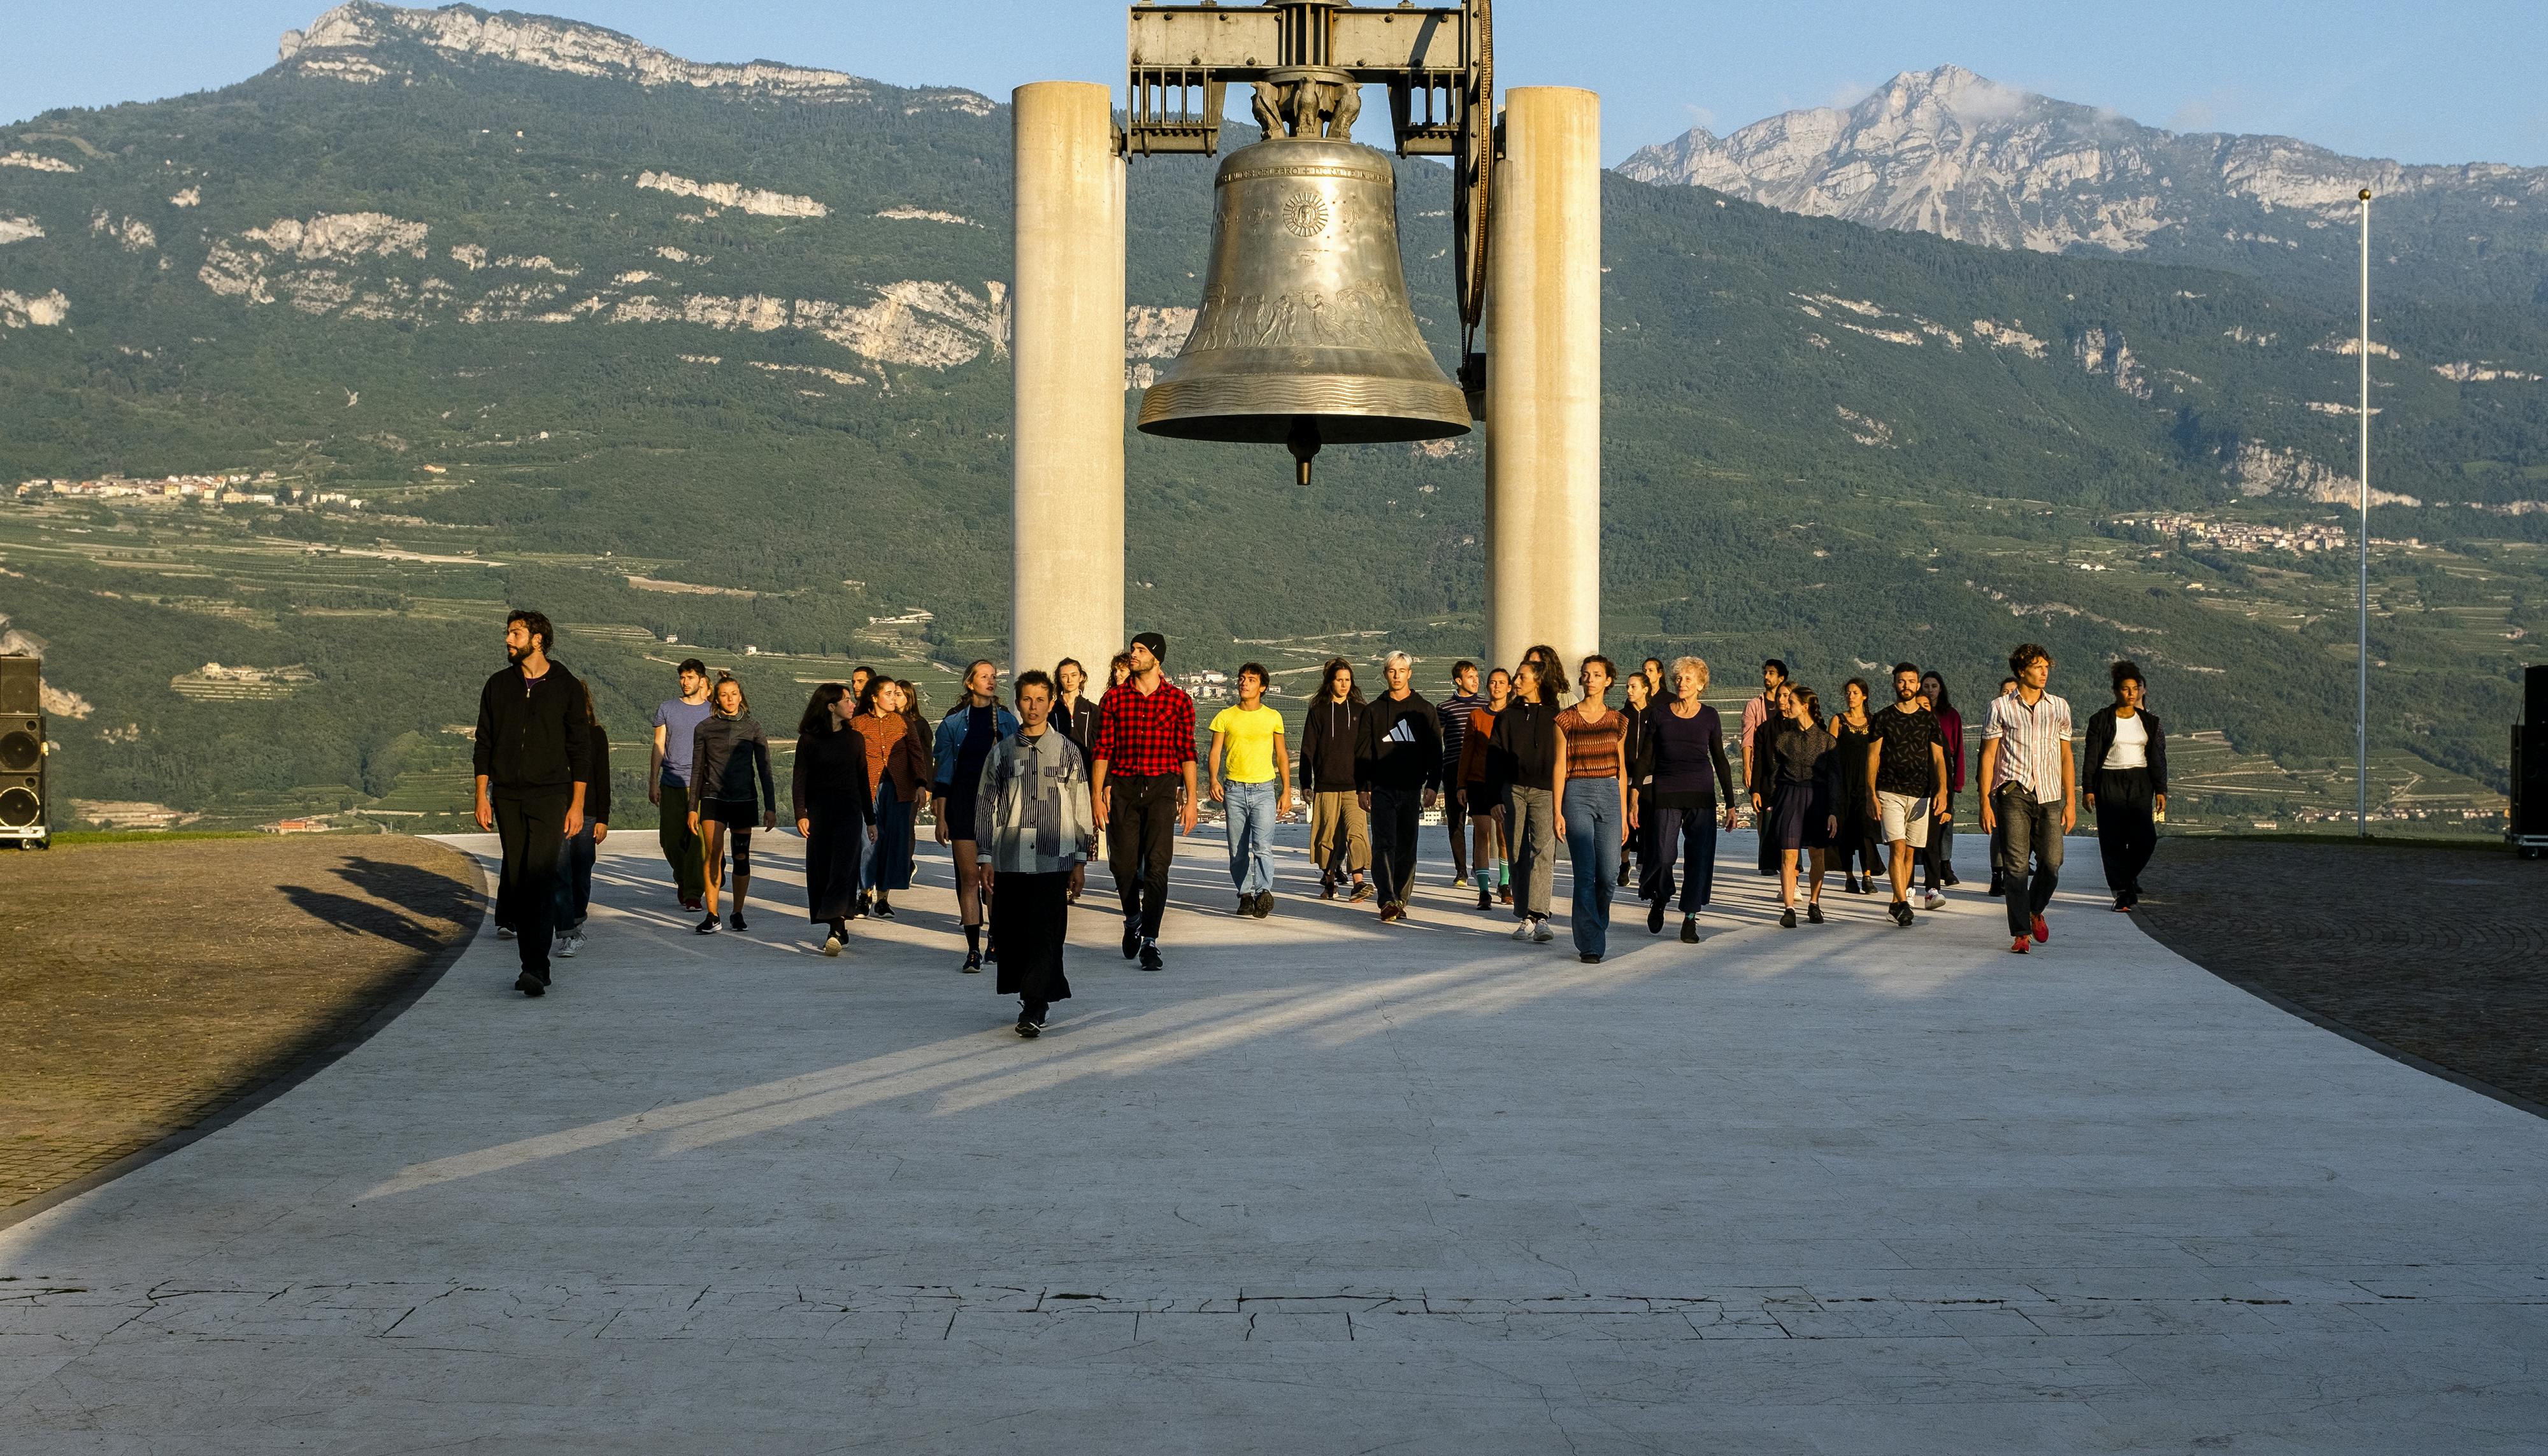 Lo spettacolo Choros di Alessio Maria Romano alla Campana dei Caduti di Rovereto. Un ampio gruppo di performer, davanti alla campana, cammina verso la camera illuminato dal sole dell'alba.